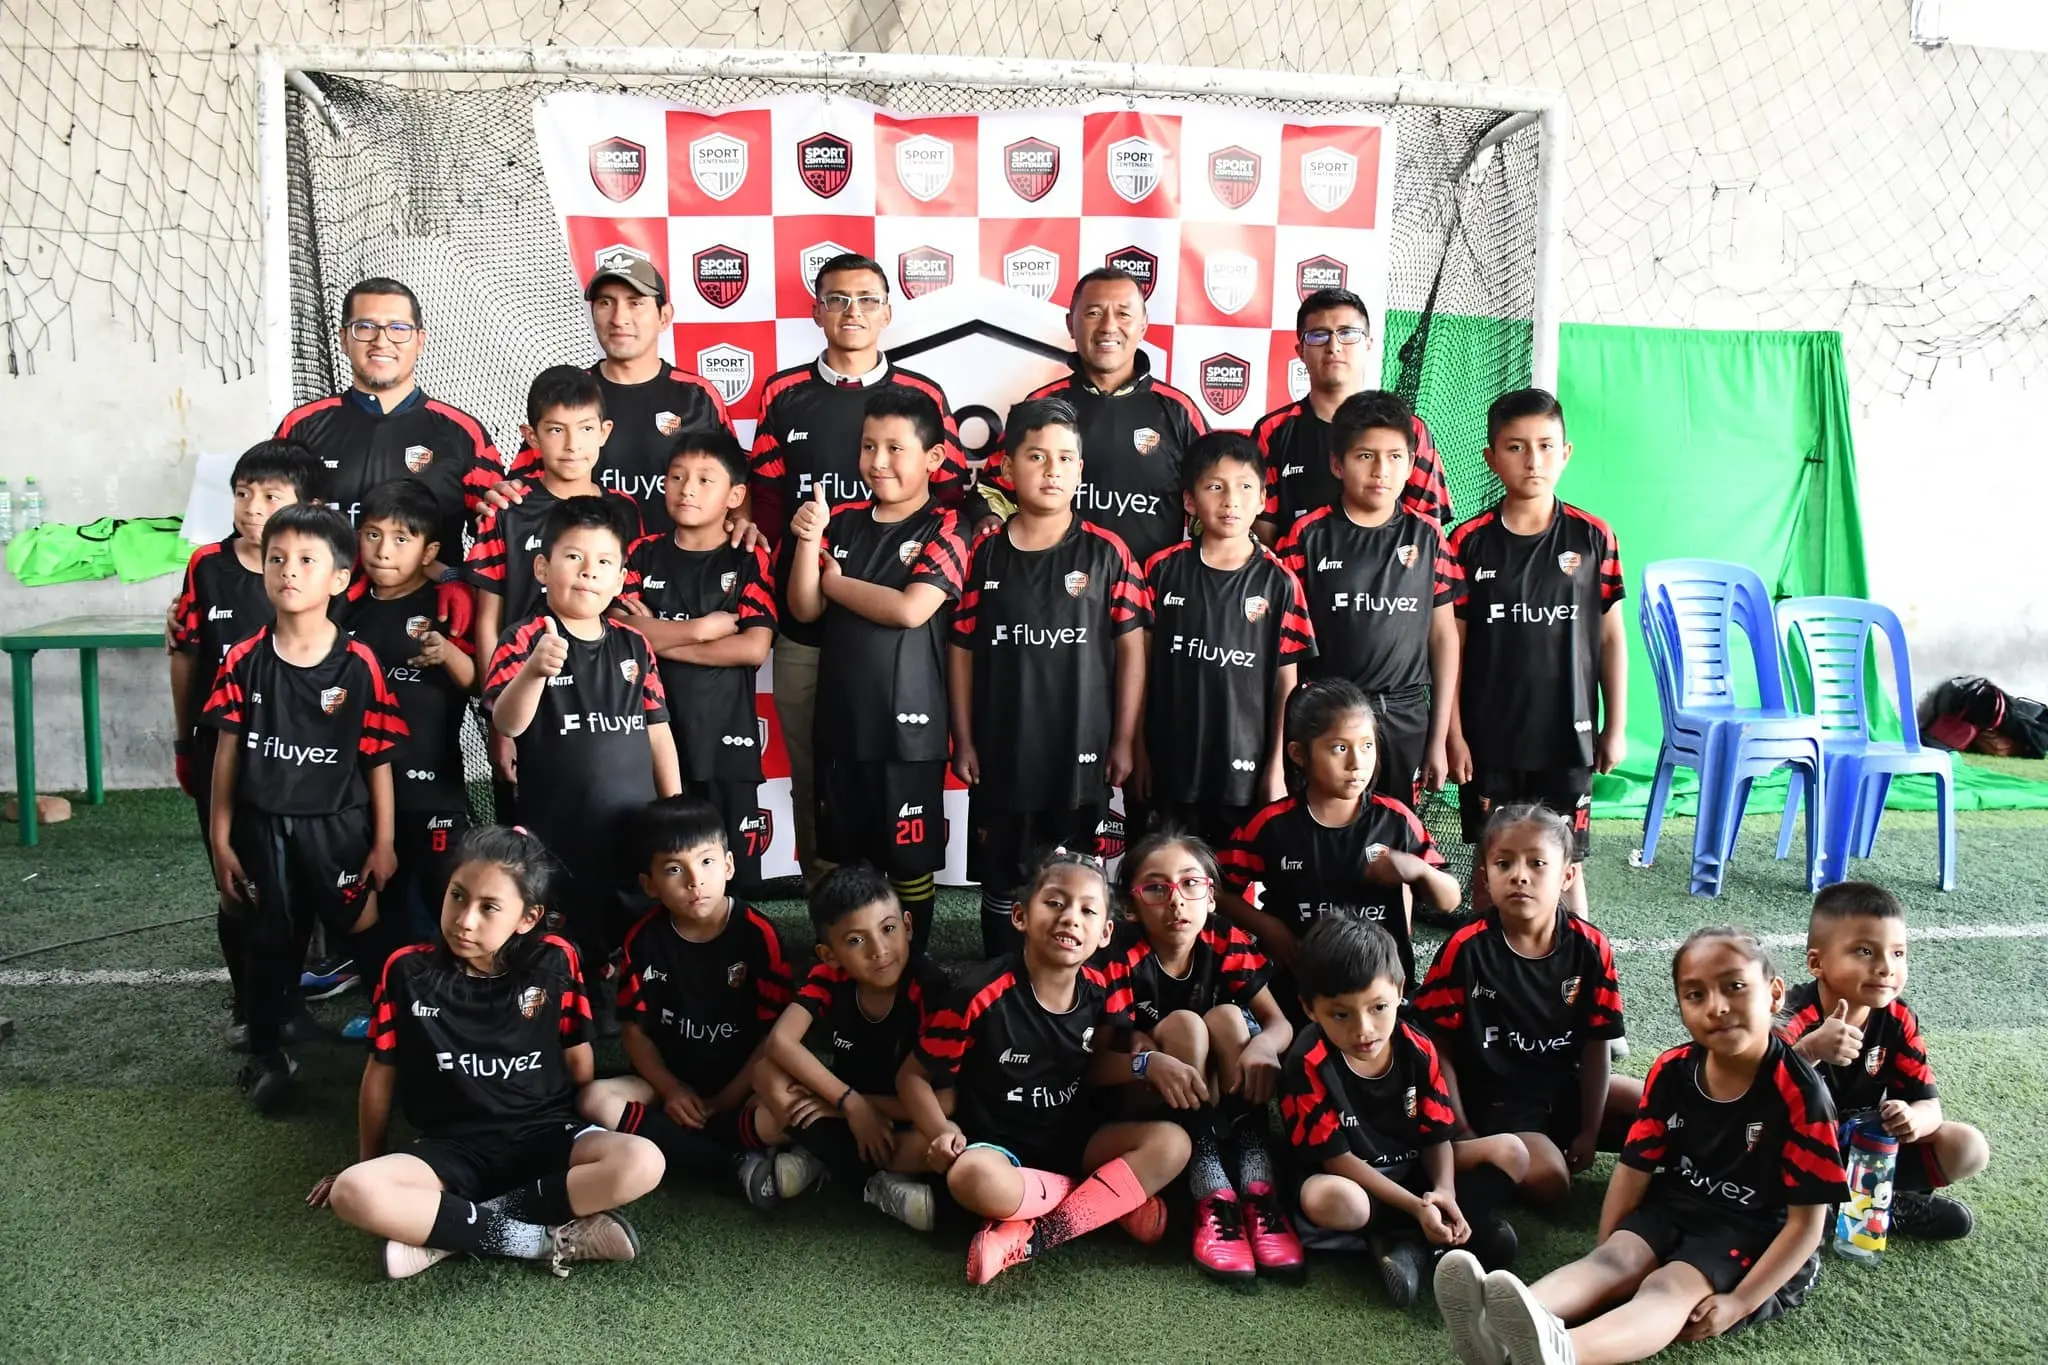 Fluyez Apoya al Equipo de Fútbol de Menores Sport Centenario de ayacucho